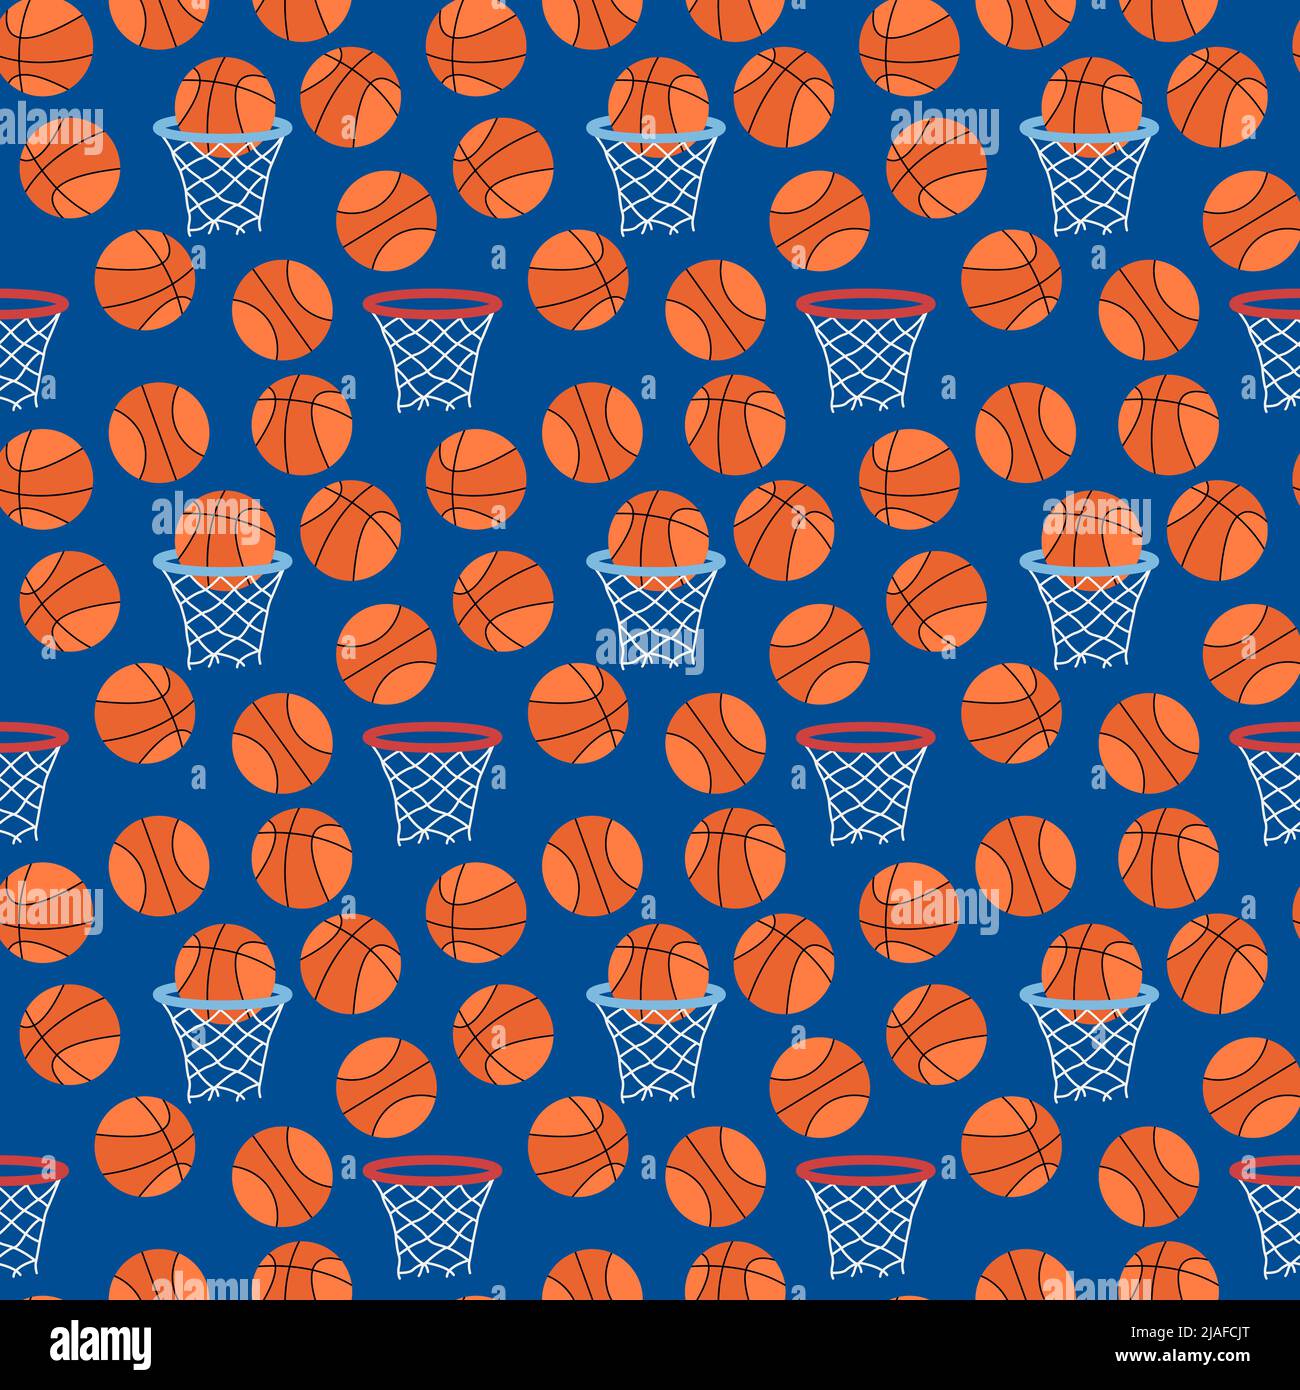 La Palla Da Basket è In Fiamme Su Uno Sfondo Nero, Belle Immagini Di Basket,  Powerpoint Sul Basket, Pallacanestro Immagine di sfondo per il download  gratuito